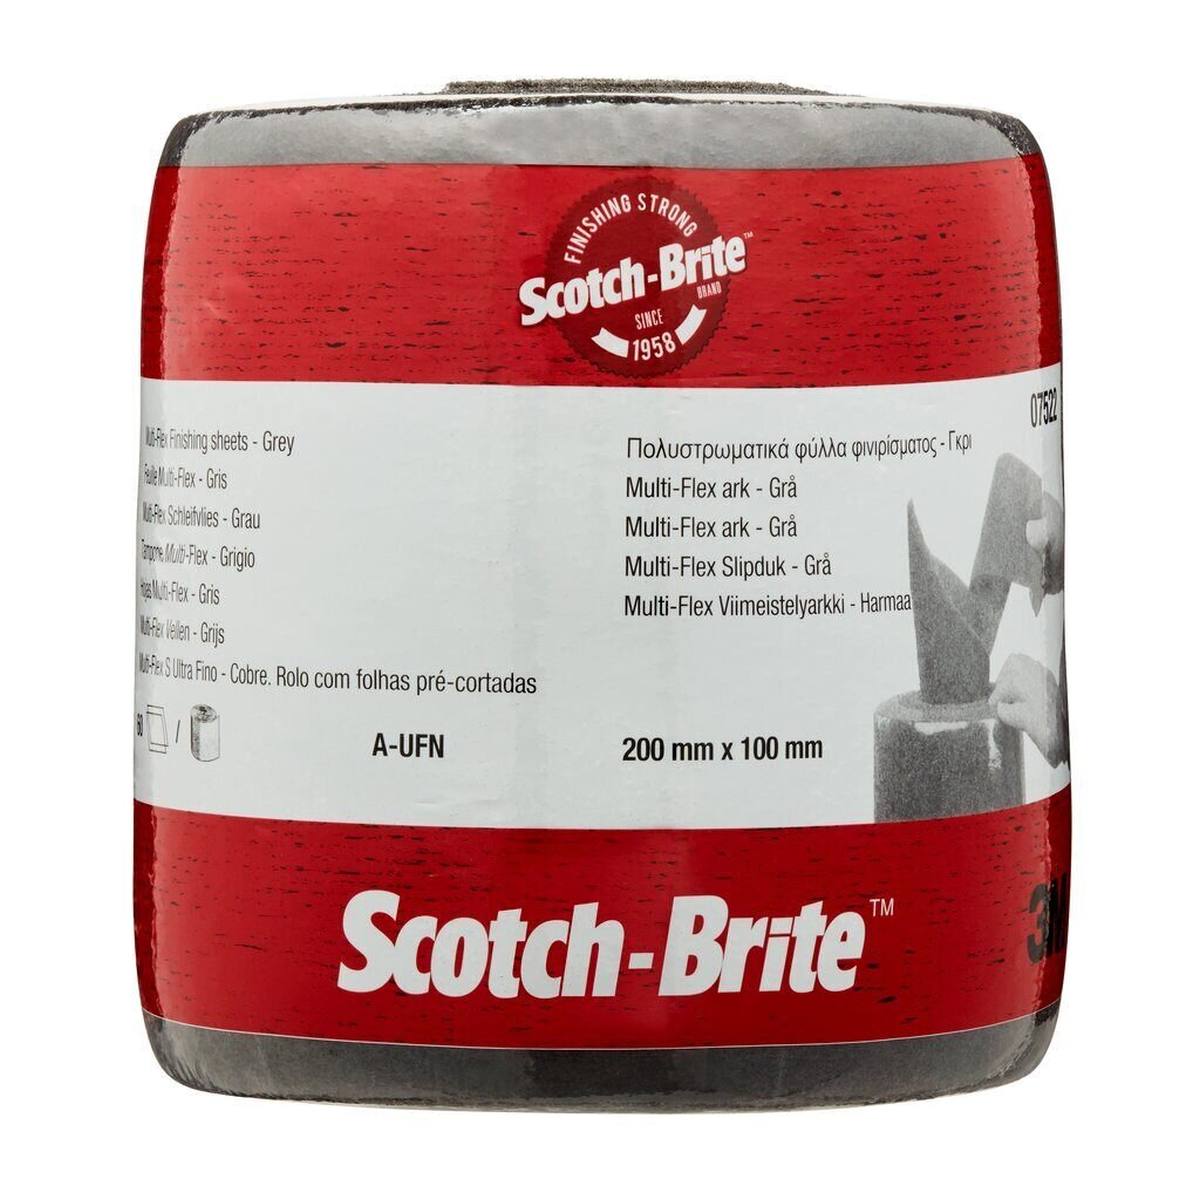 3M Scotch-Brite Multi-Flex rotolo di tessuto non tessuto MX-SR, grigio, 100 mm x 200 mm, A, ultra fine, 60 pieghe perforate #07522